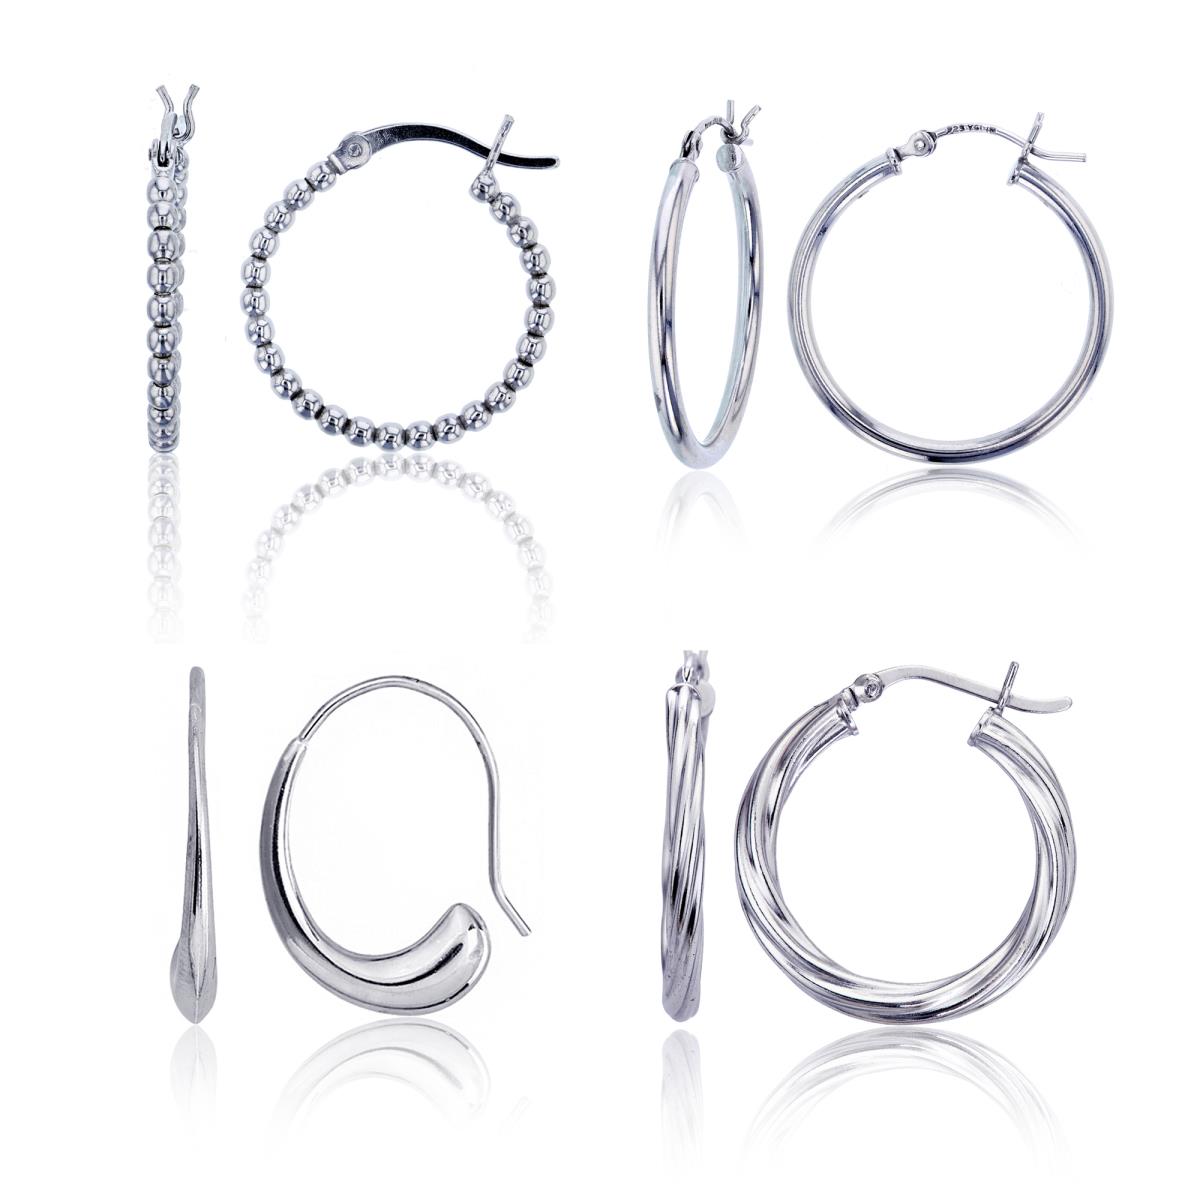 Sterling Silver Rhodium Beaded, Polished, Twist & Fish-Hook Hoop Earrings Set